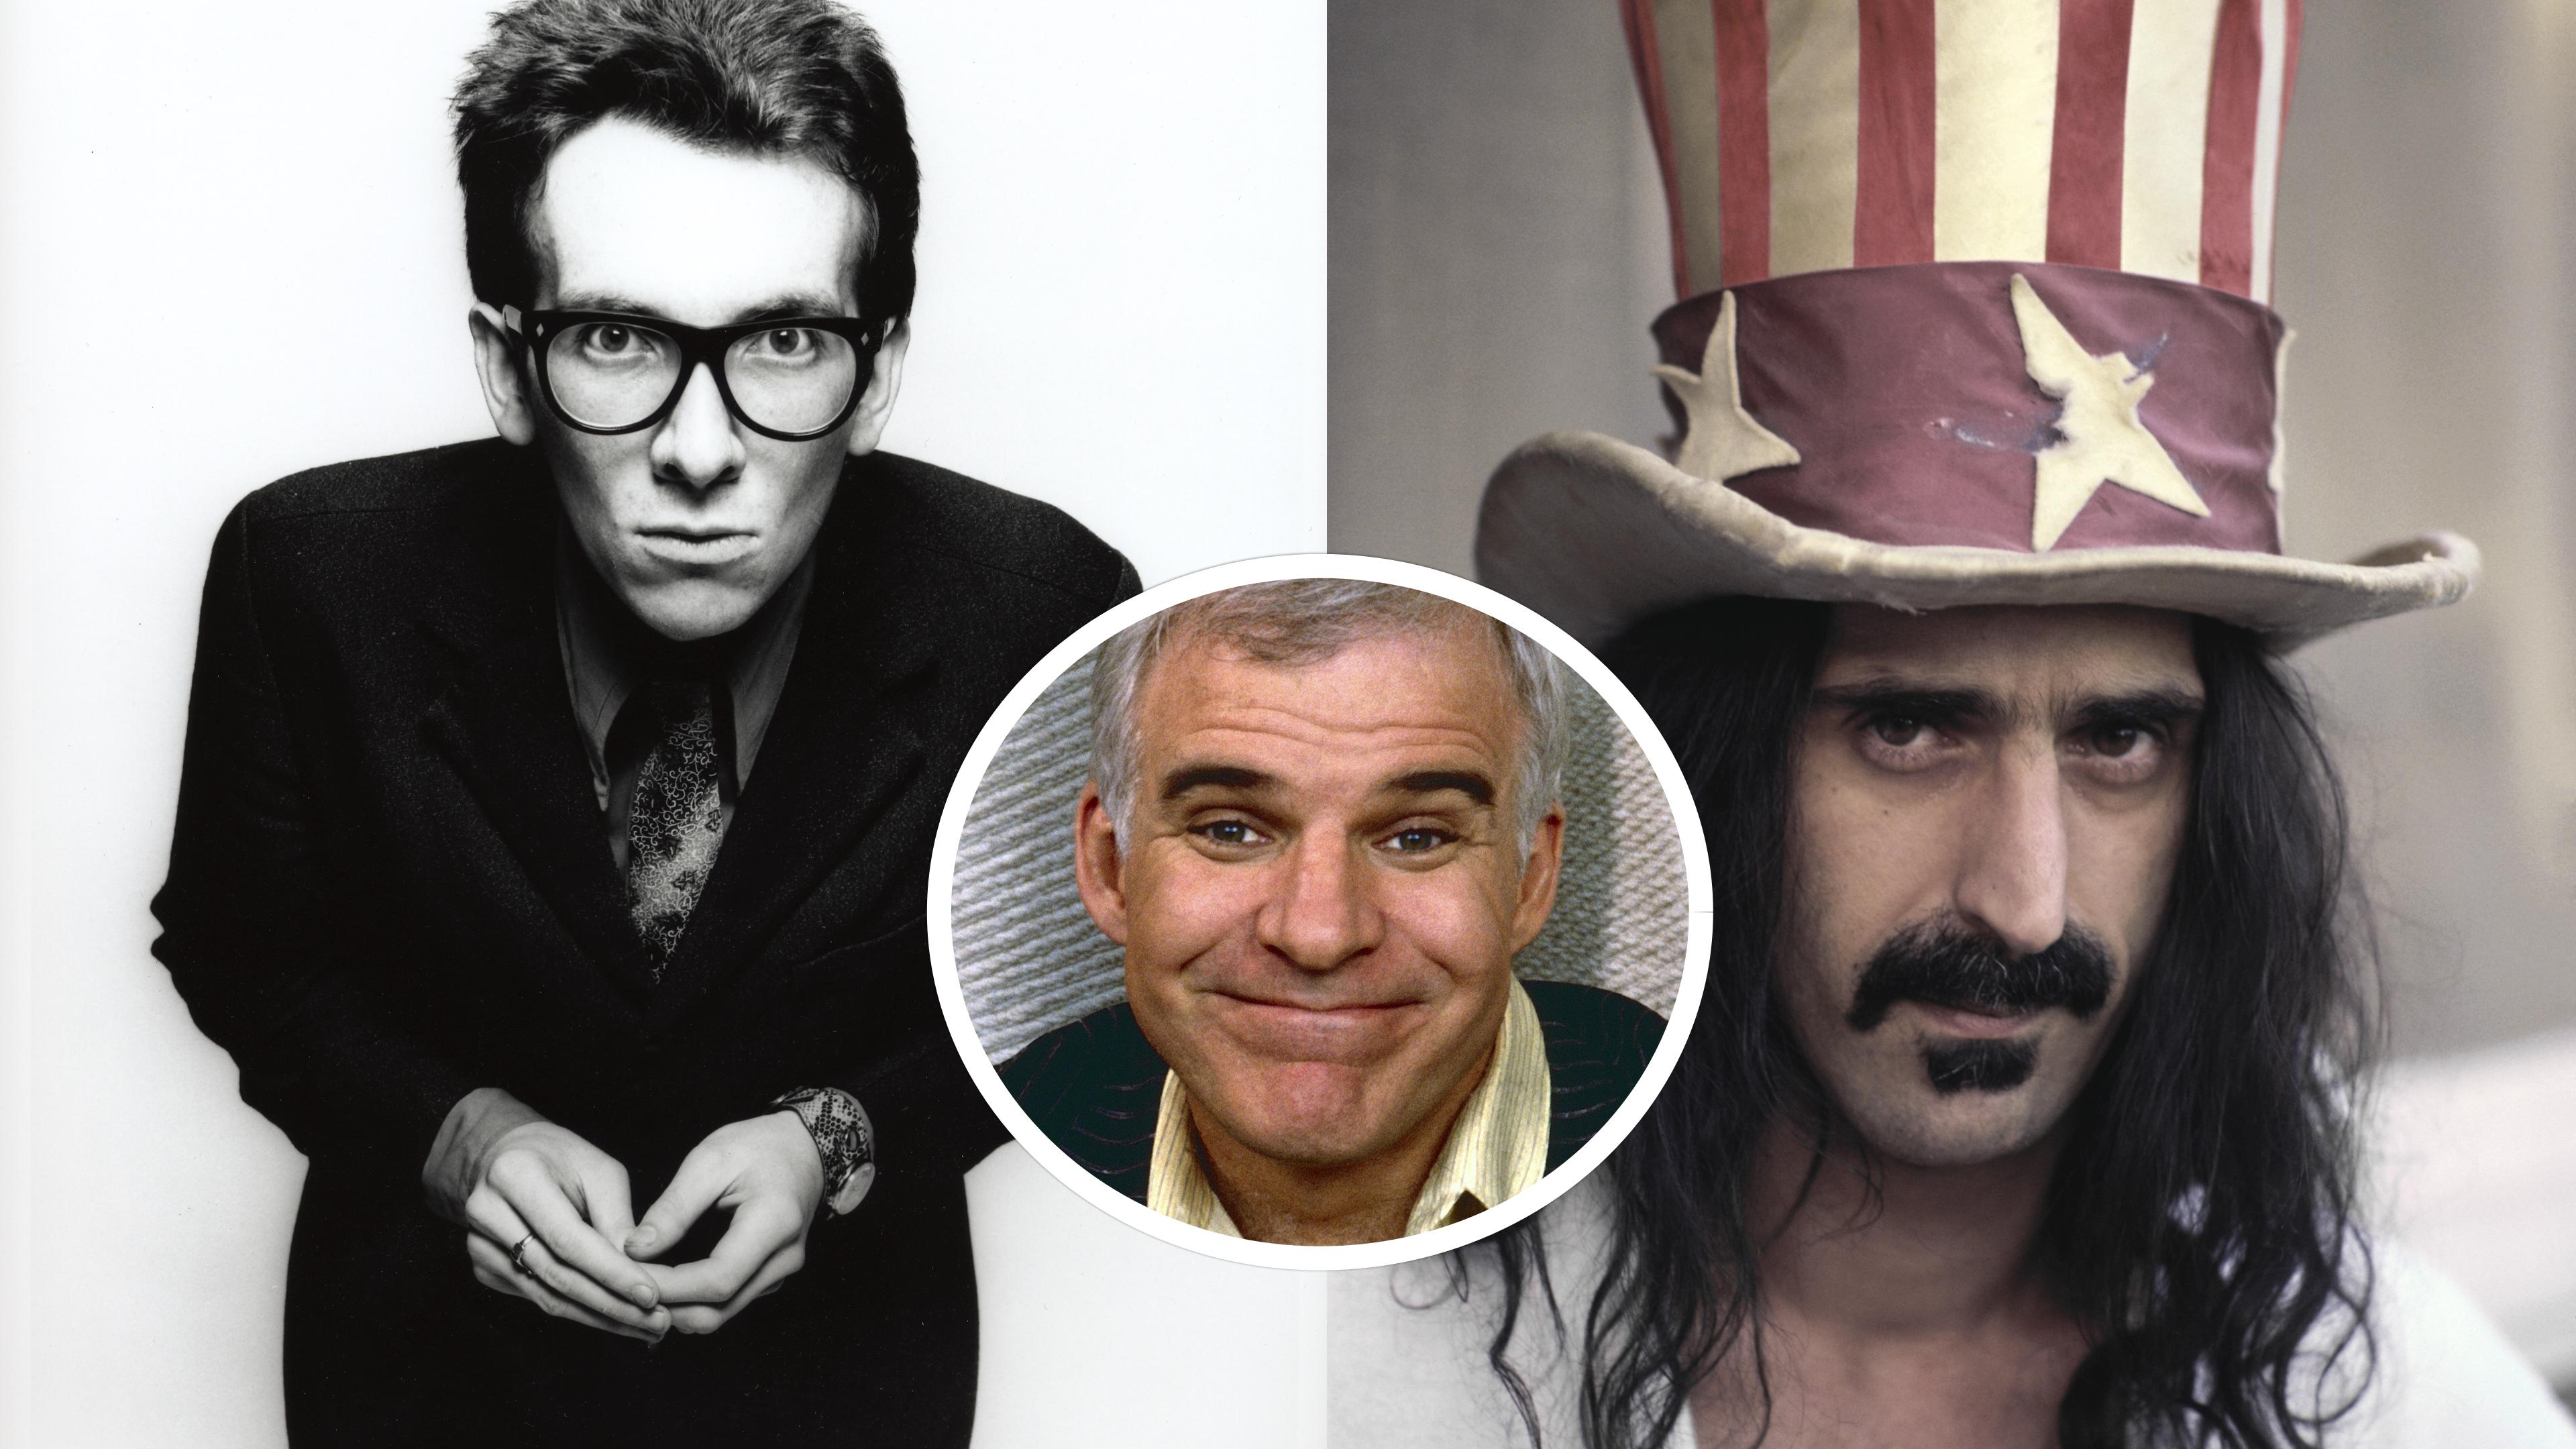 Stehen unter Urheberverdacht: Elvis Costello, Frank Zappa und Steve Martin